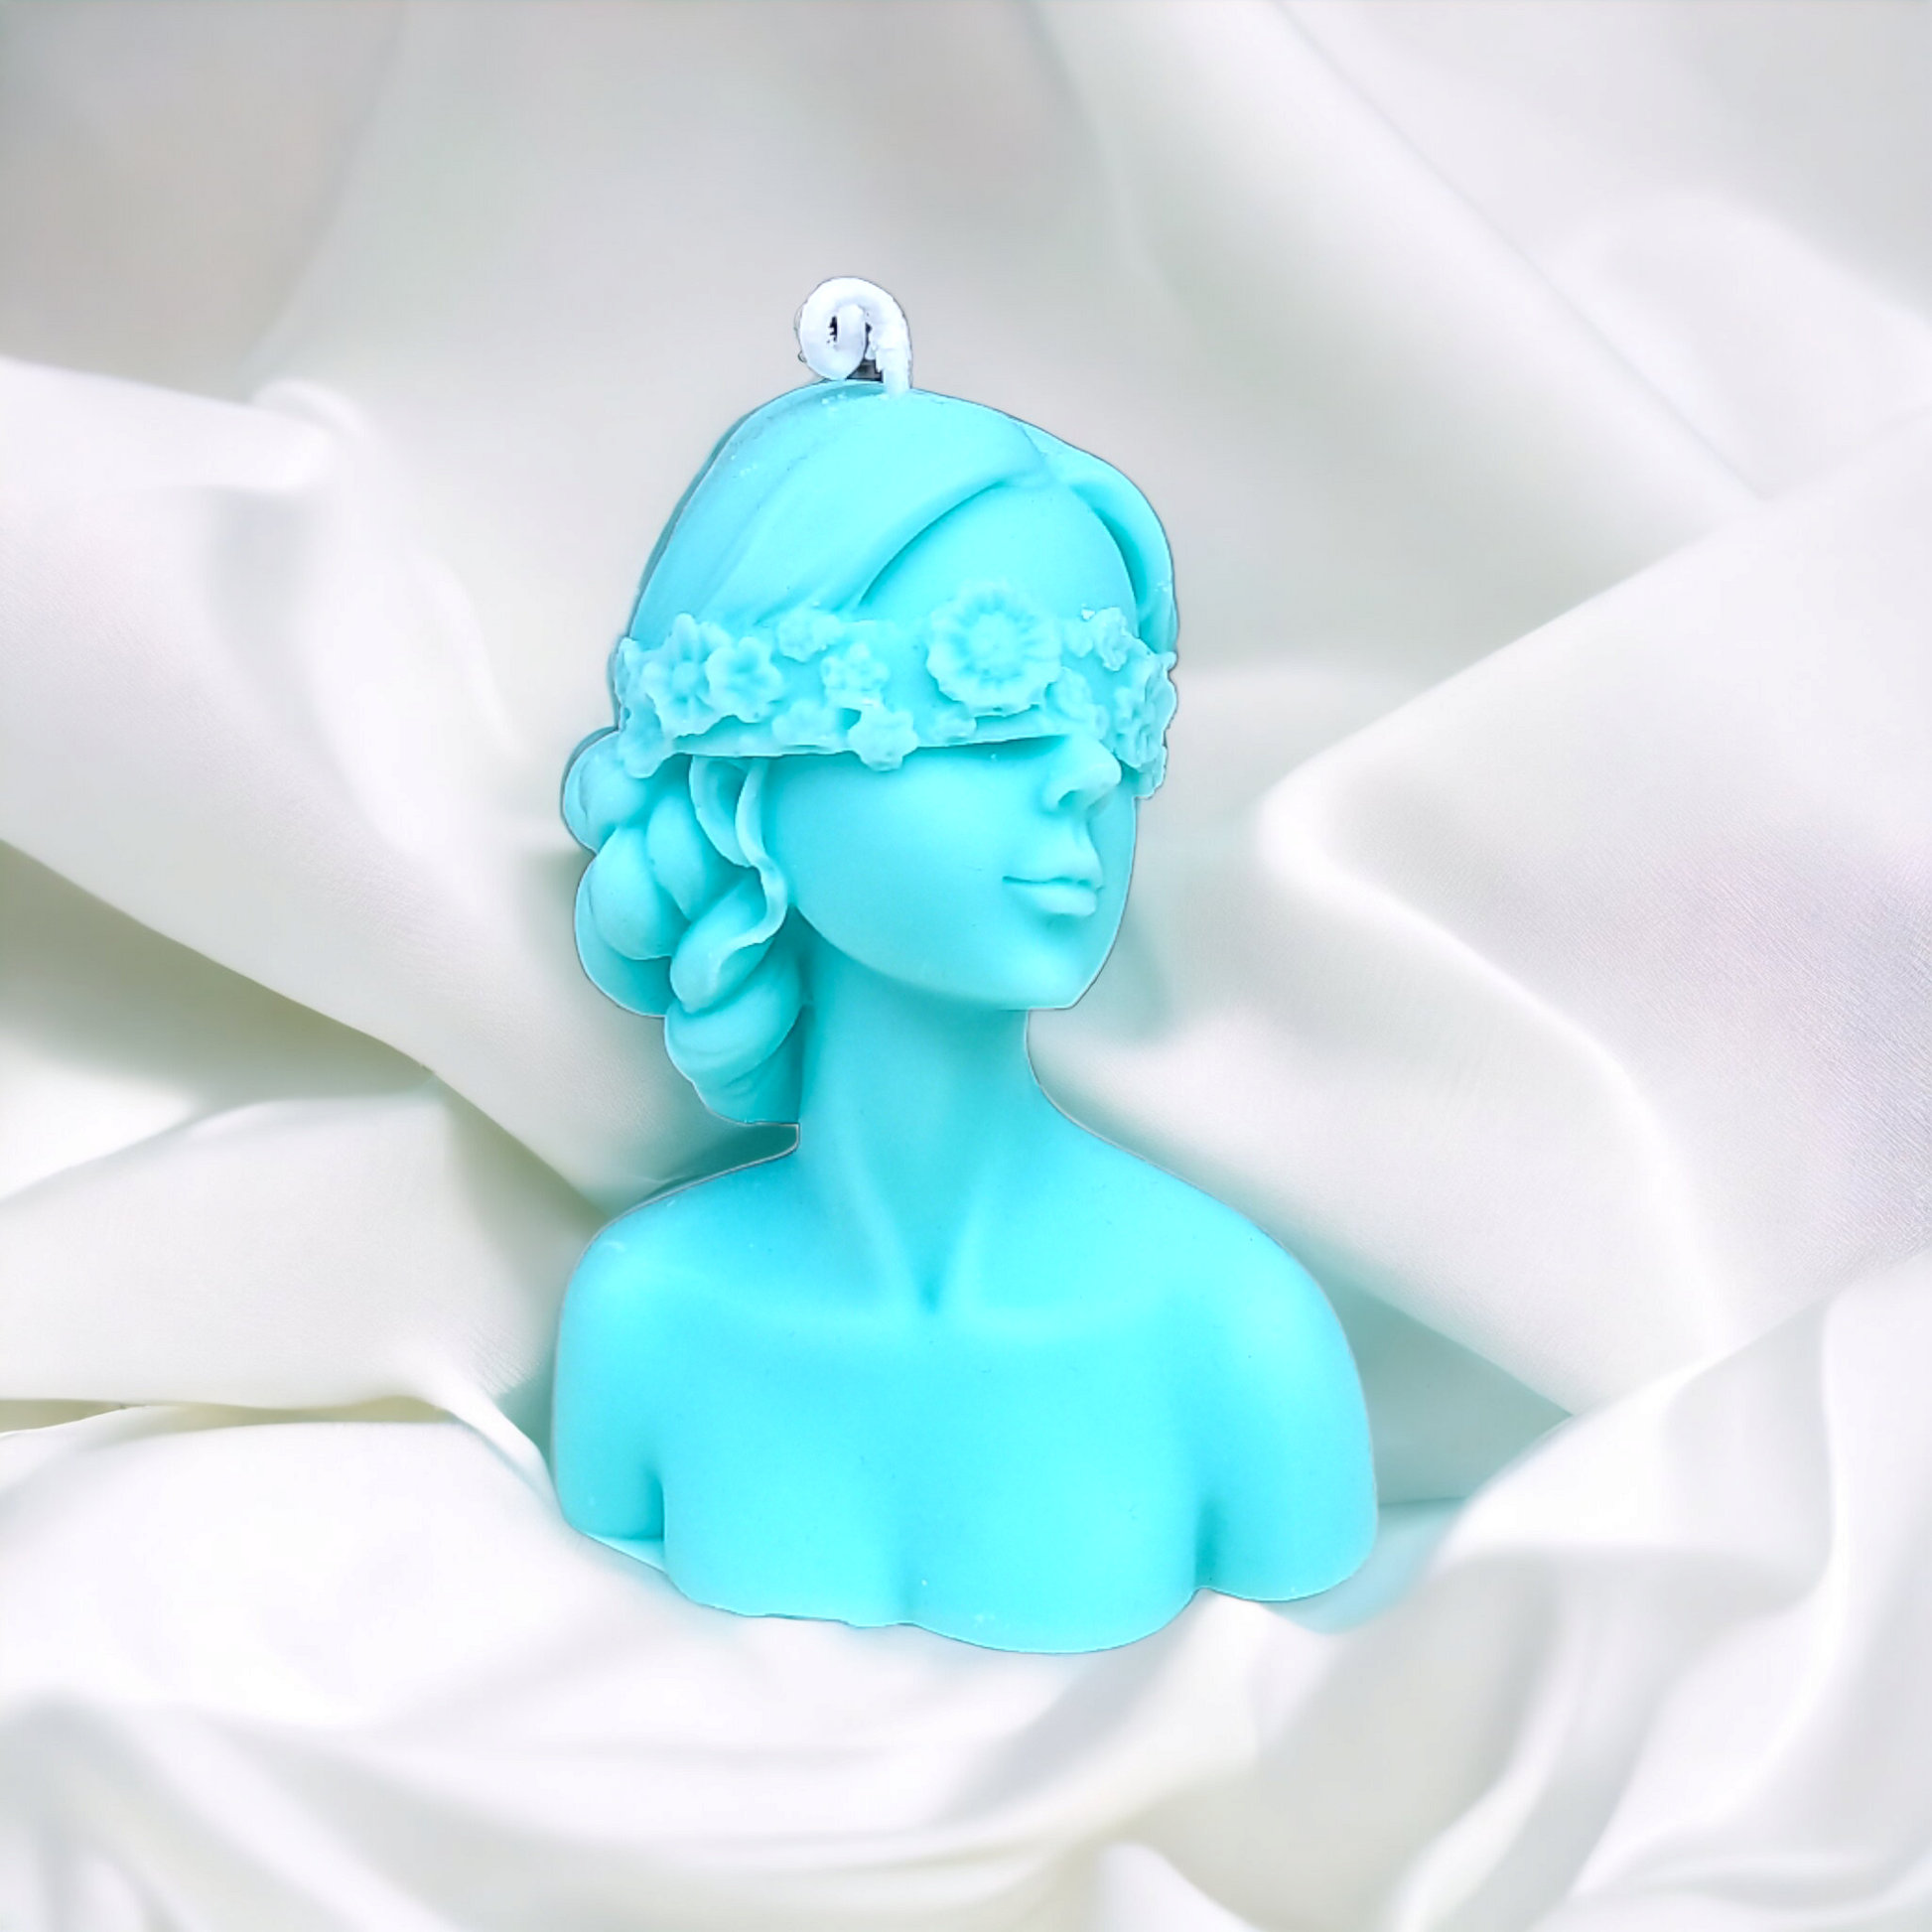 Lady Luck decorative candle in soy wax – Bottega delle creazioni